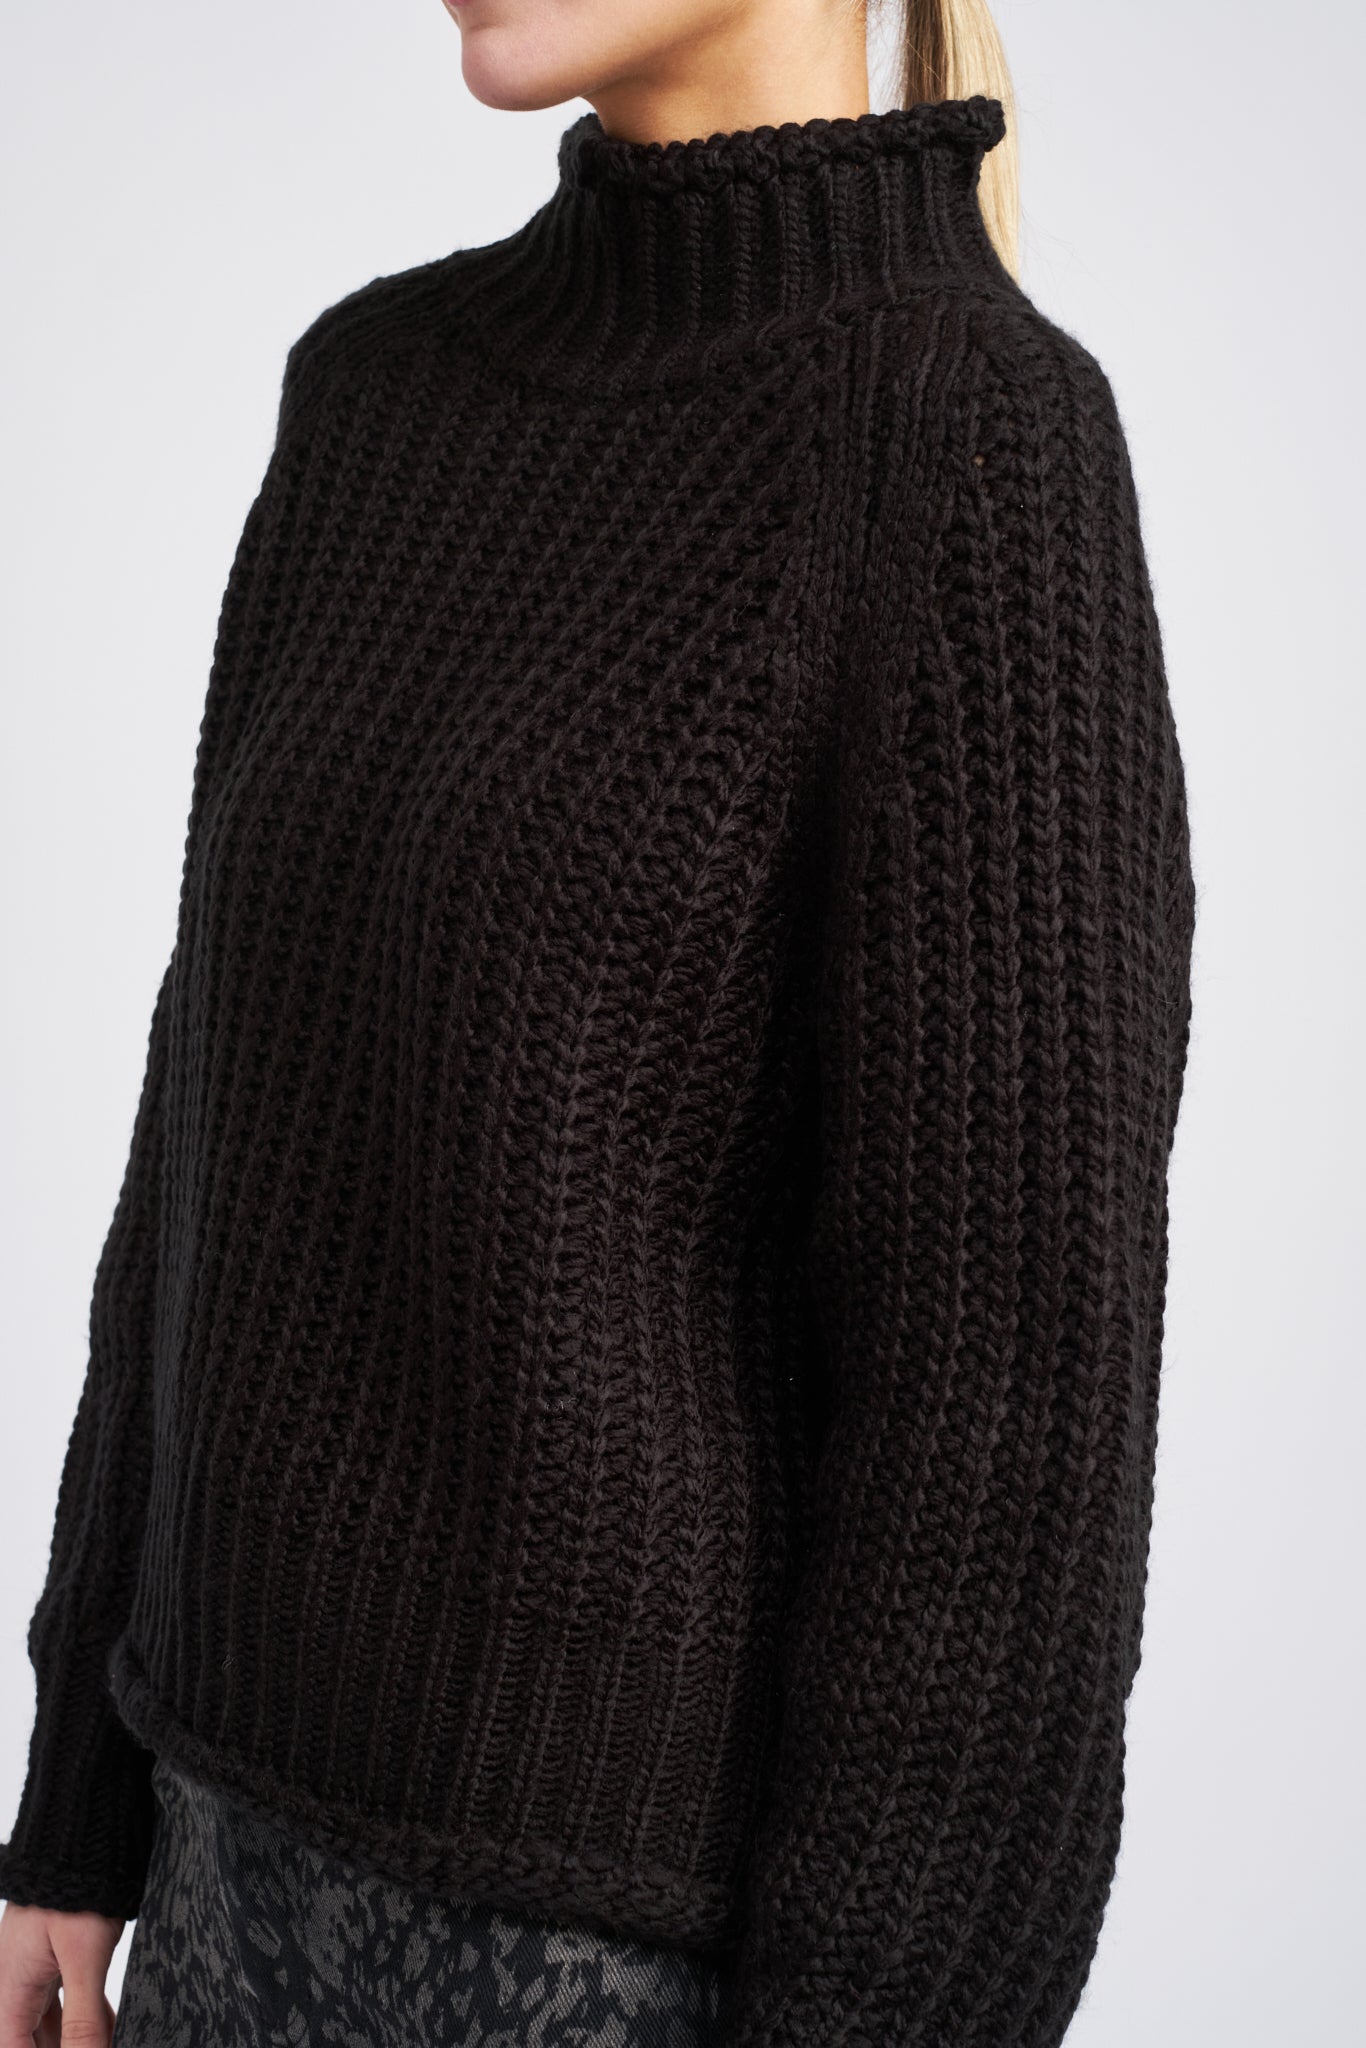 Regina Knit Pullover in Black